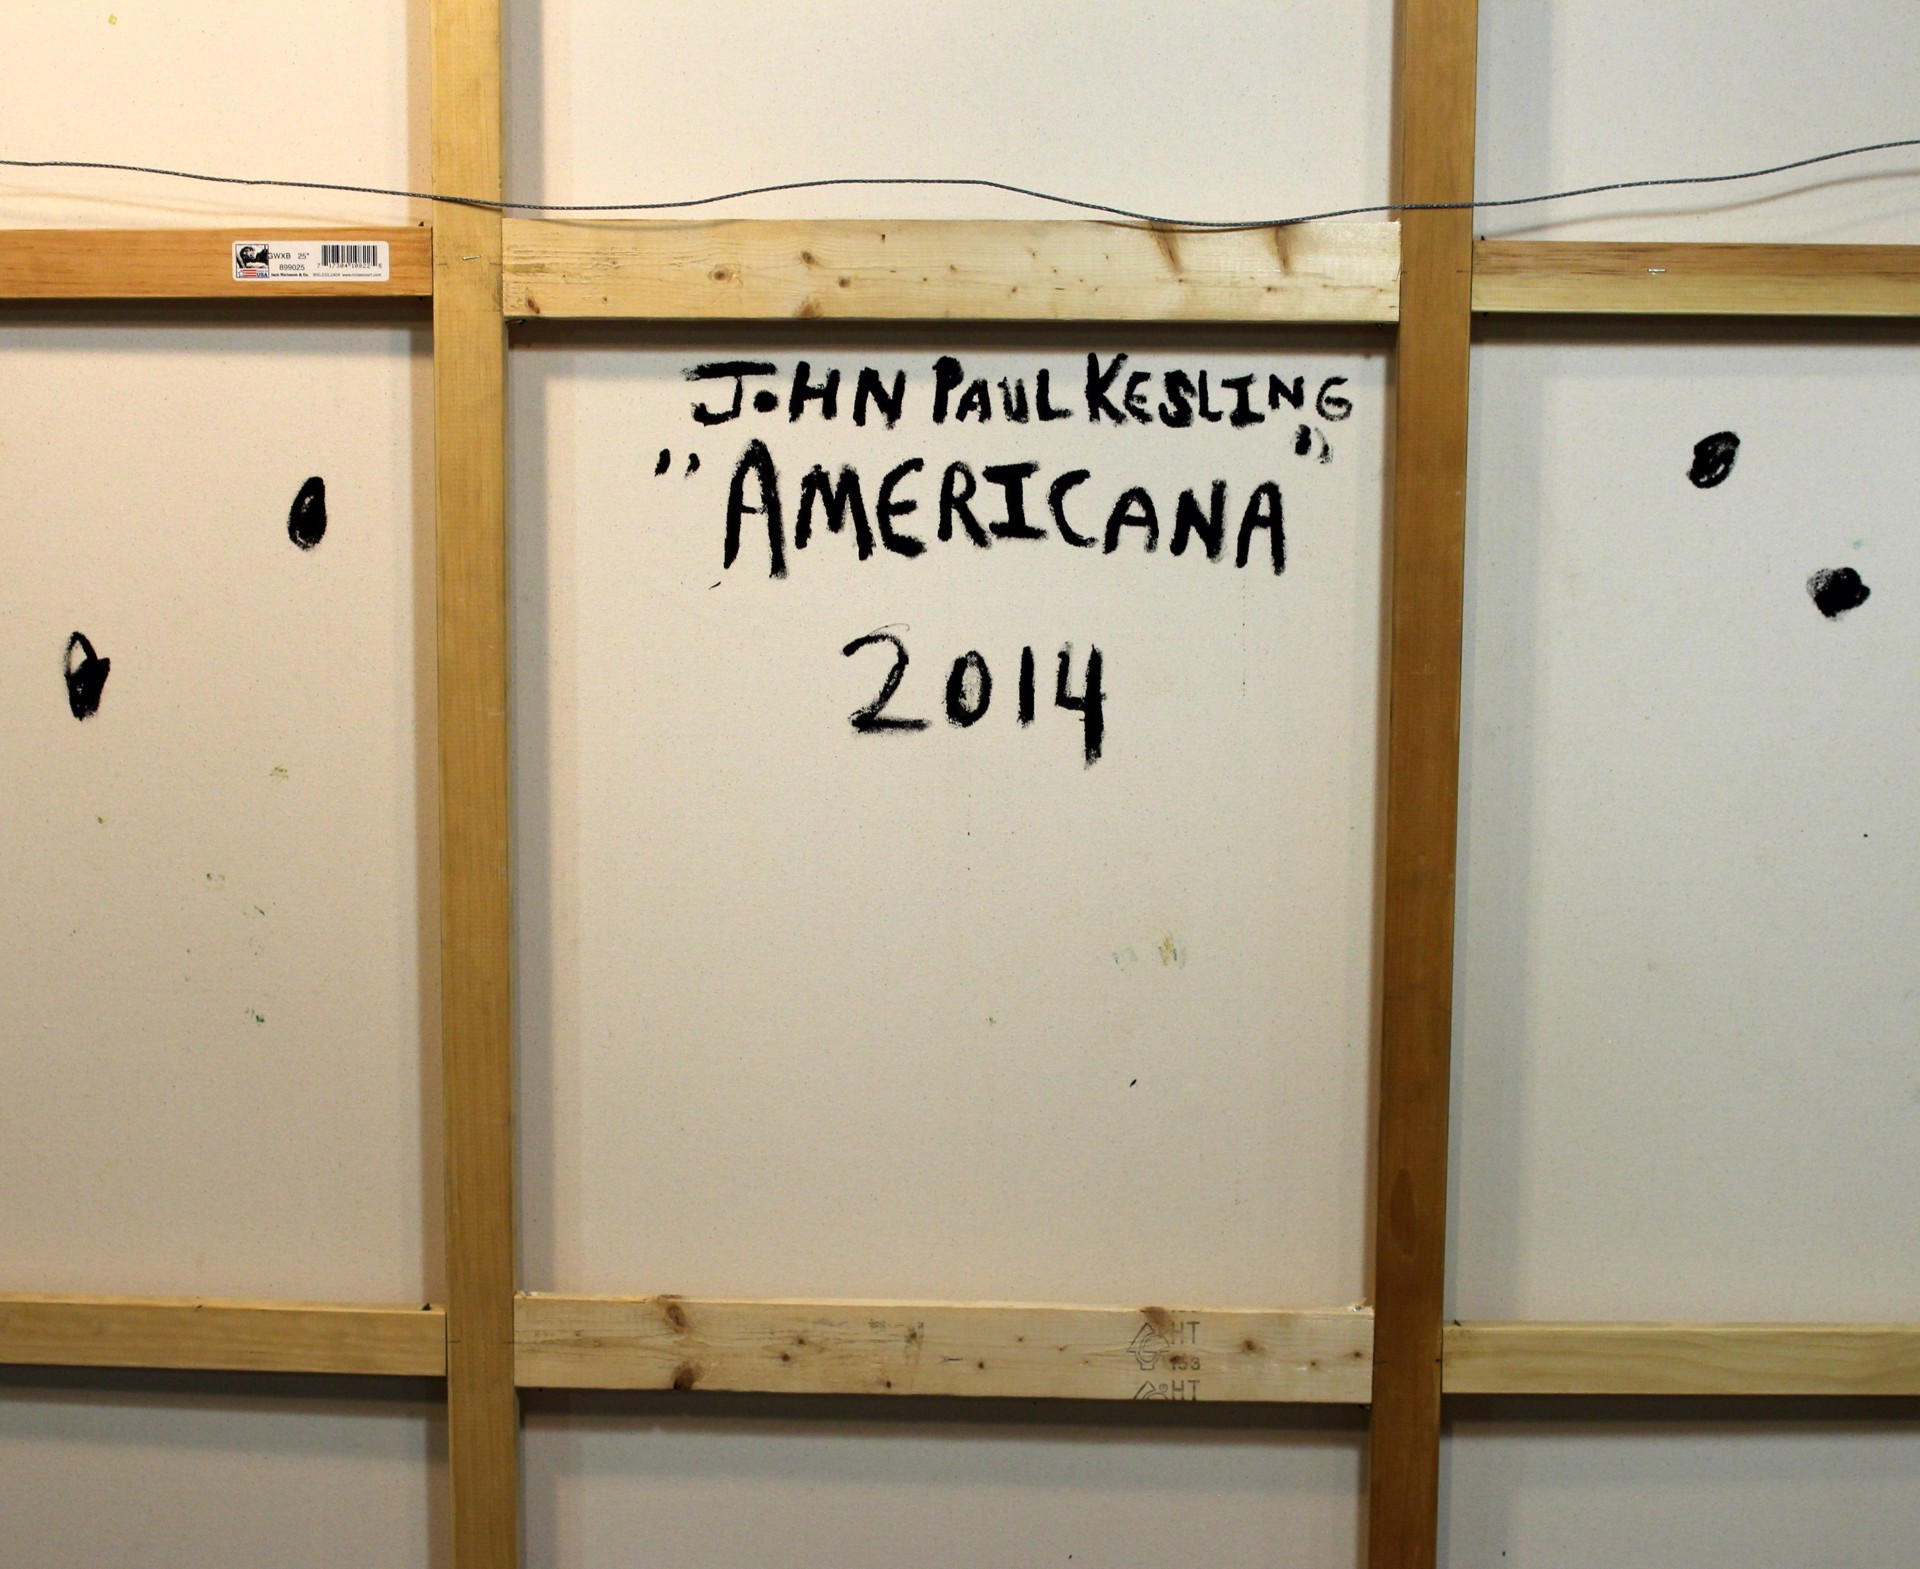 Americana by John Paul Kesling